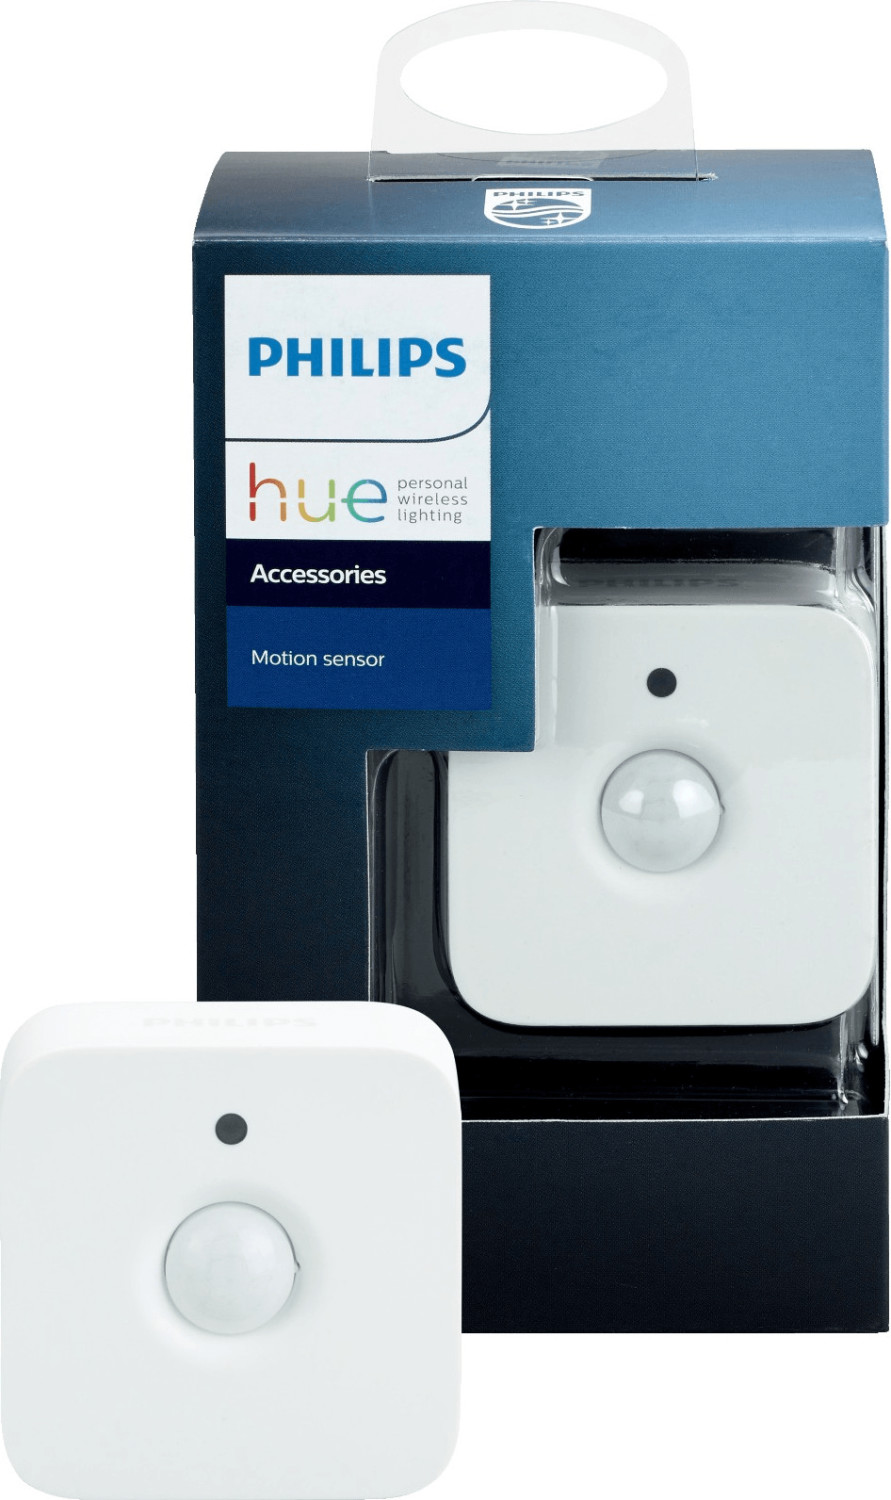 Bild zu [beendet] Philips Hue Bewegungsmelder für 24,20€ (Vergleich: 36,76€)